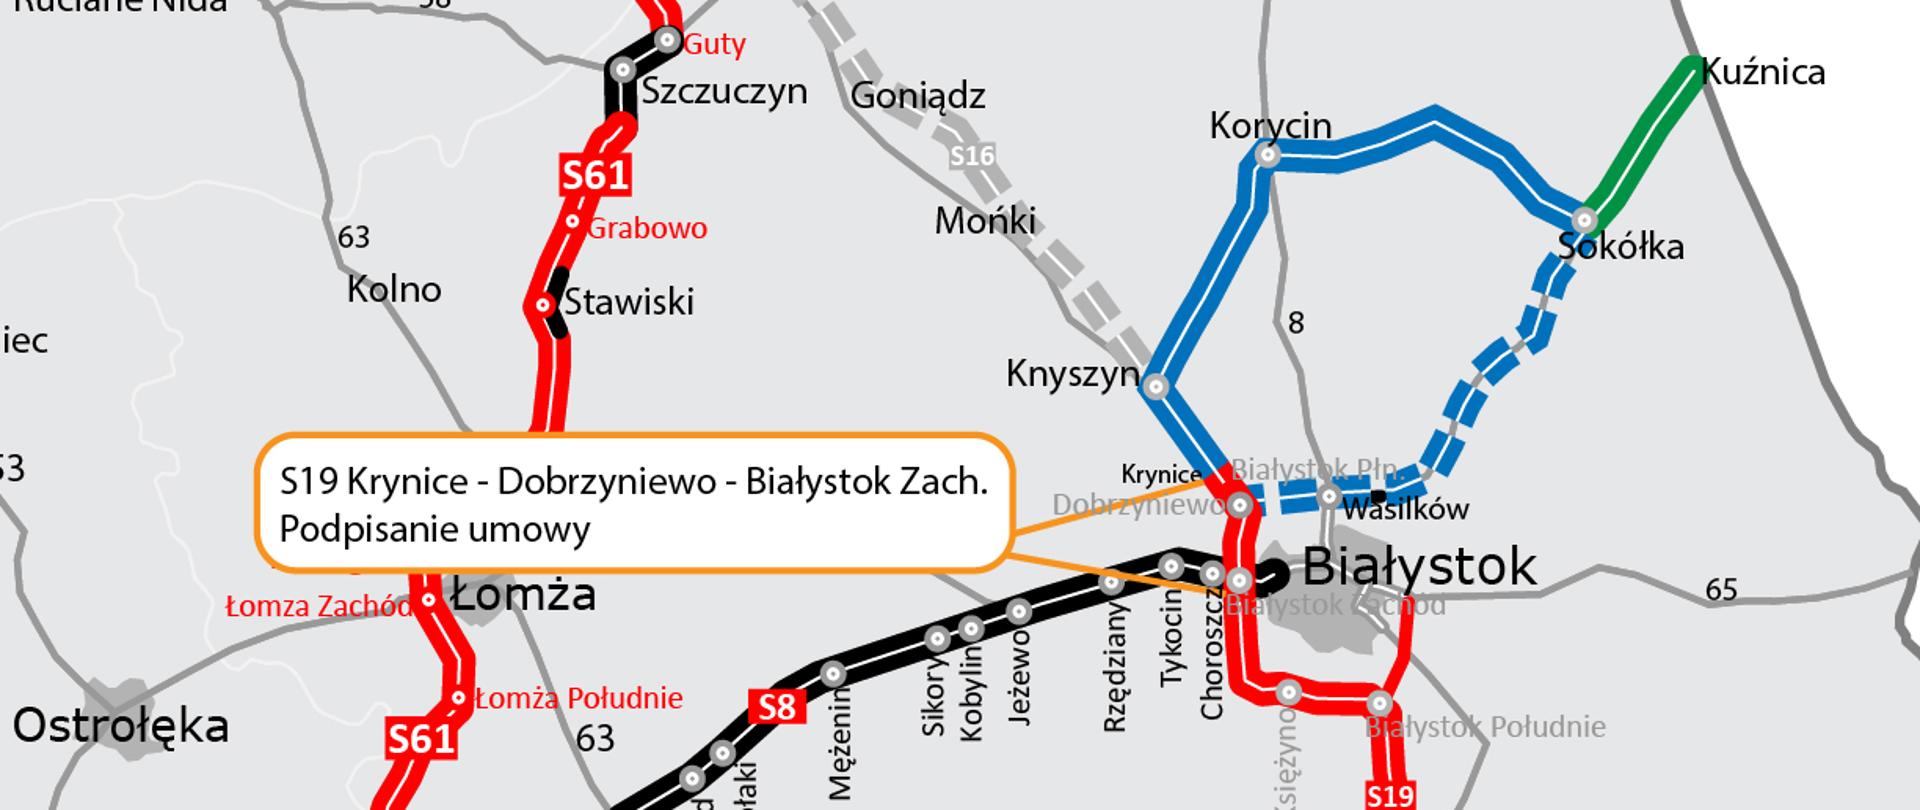 Odcinek drogi ekspresowej S19 Krynice – Dobrzyniewo – Białystok Zachód jest już w realizacji